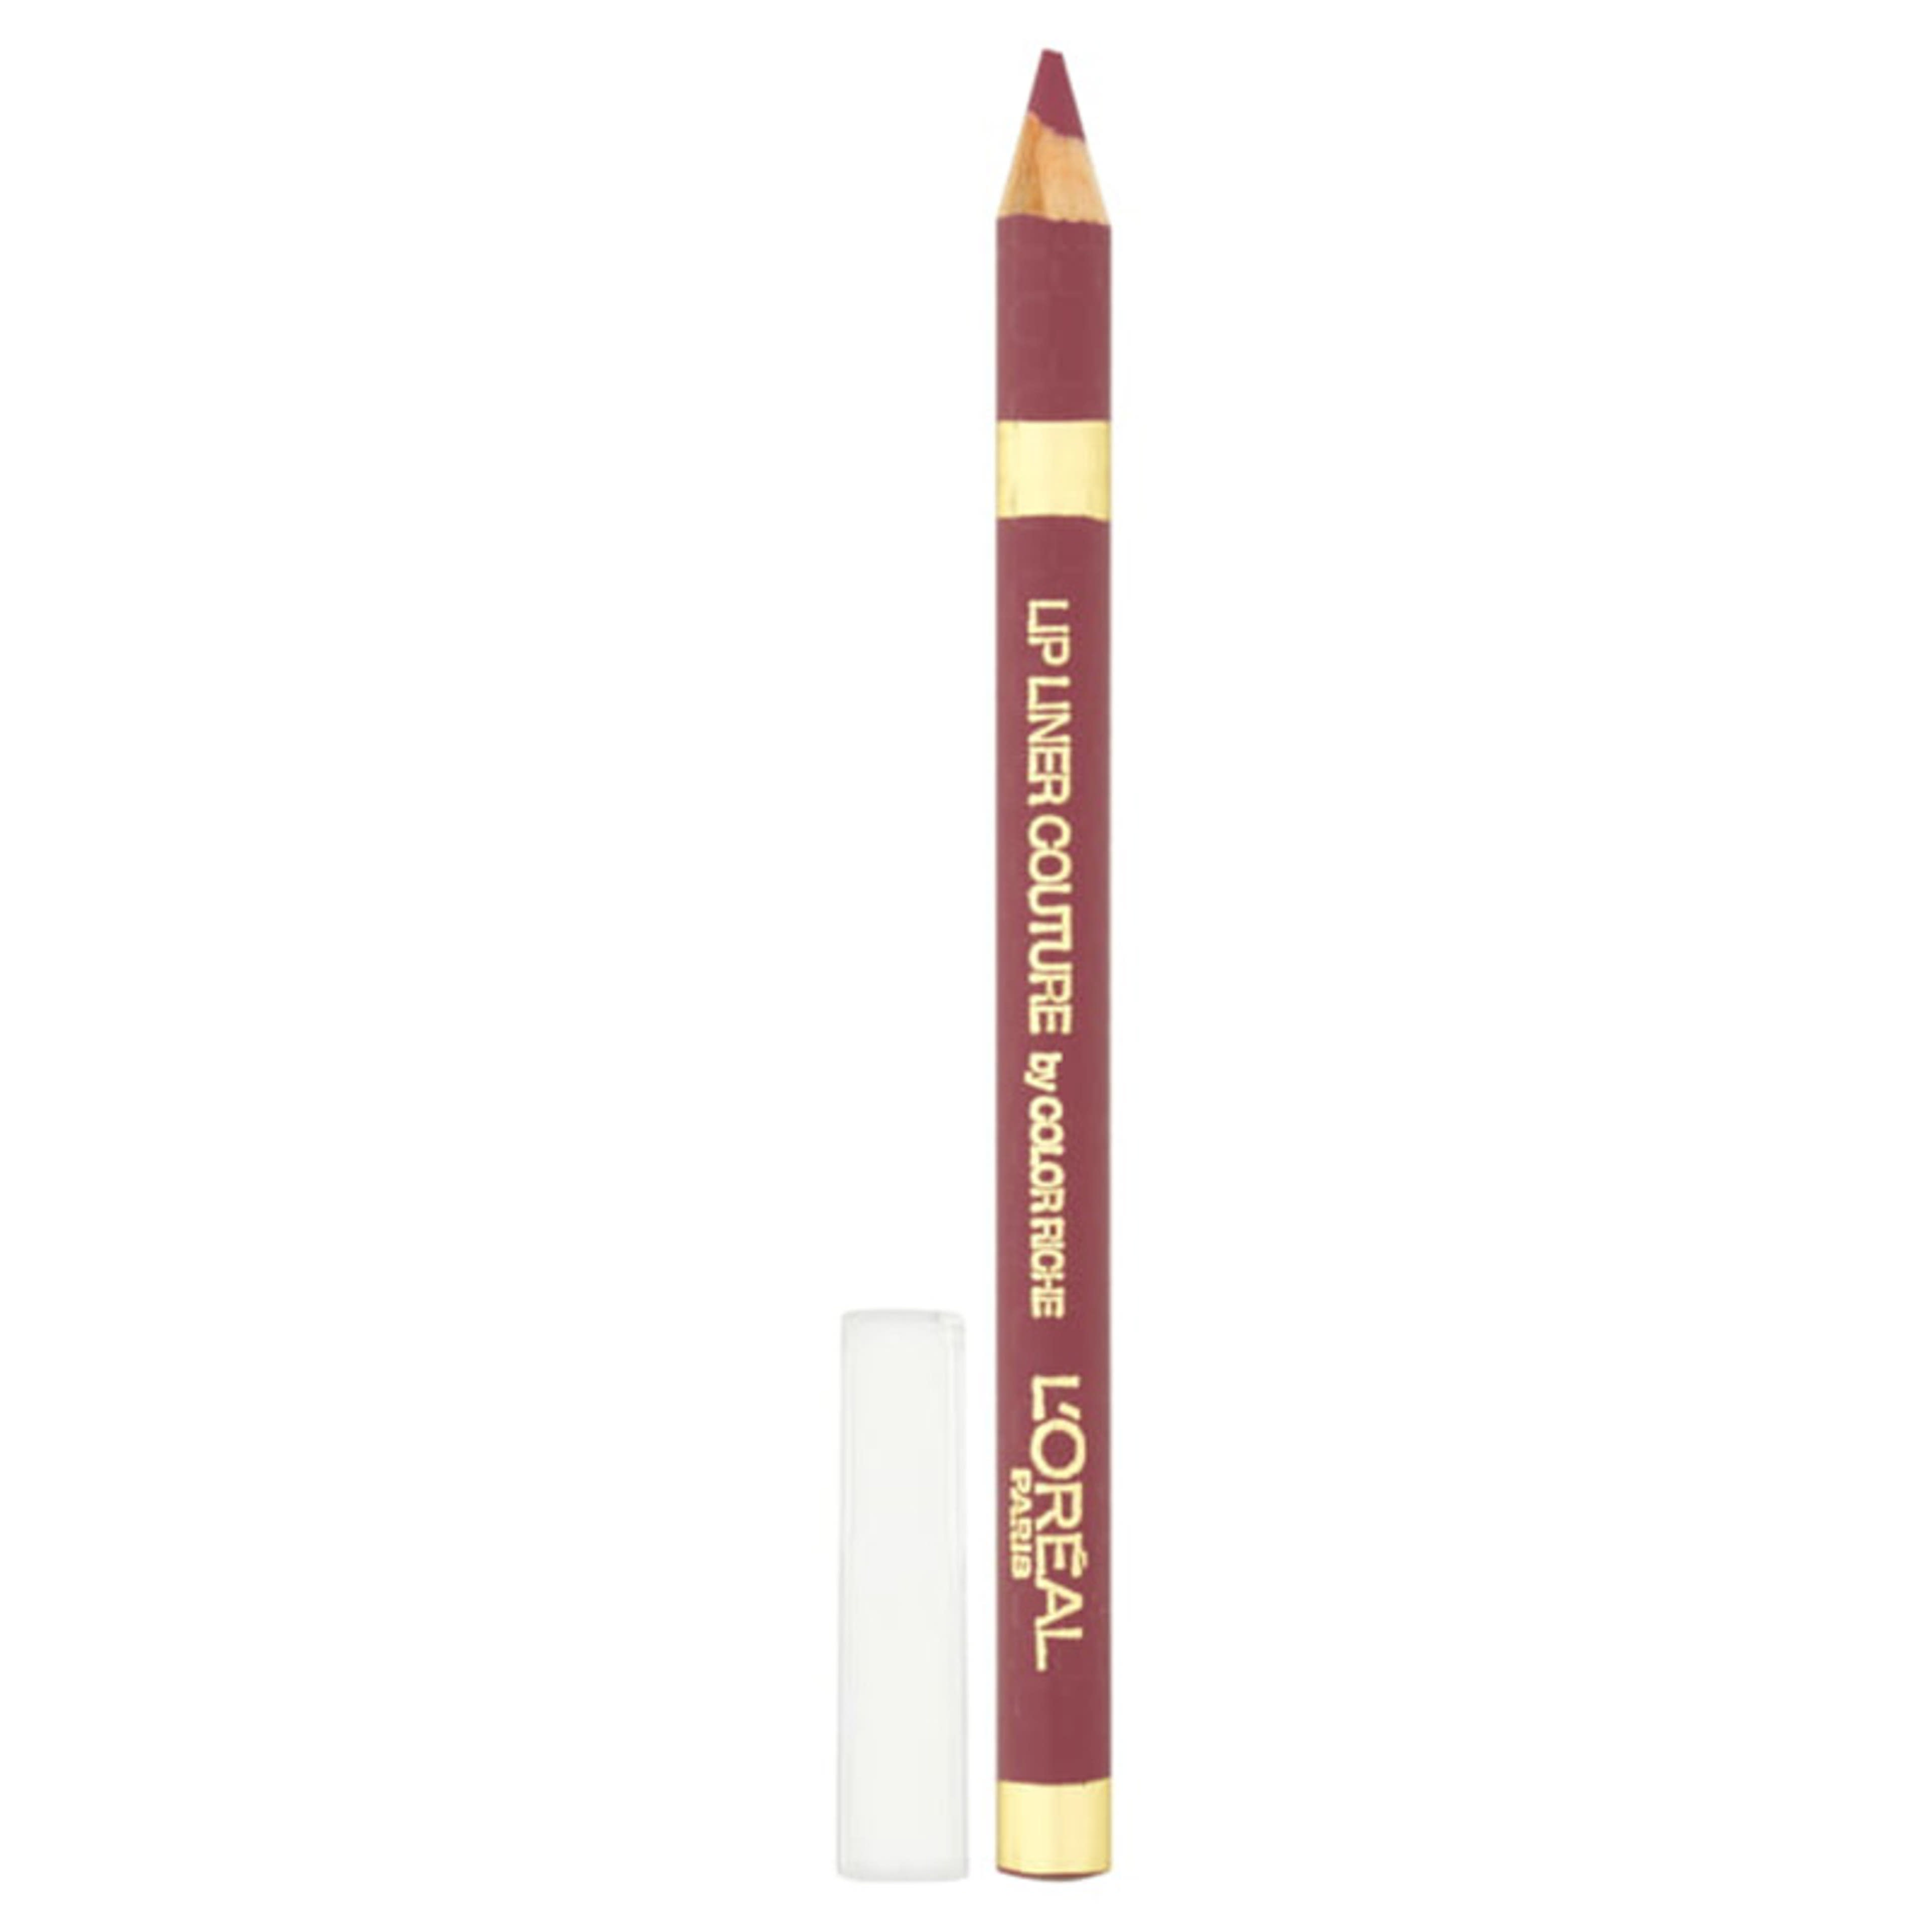 L'Oréal Paris Color Riche ajakkontúr ceruza, 302 Bois de Rose - 1 db